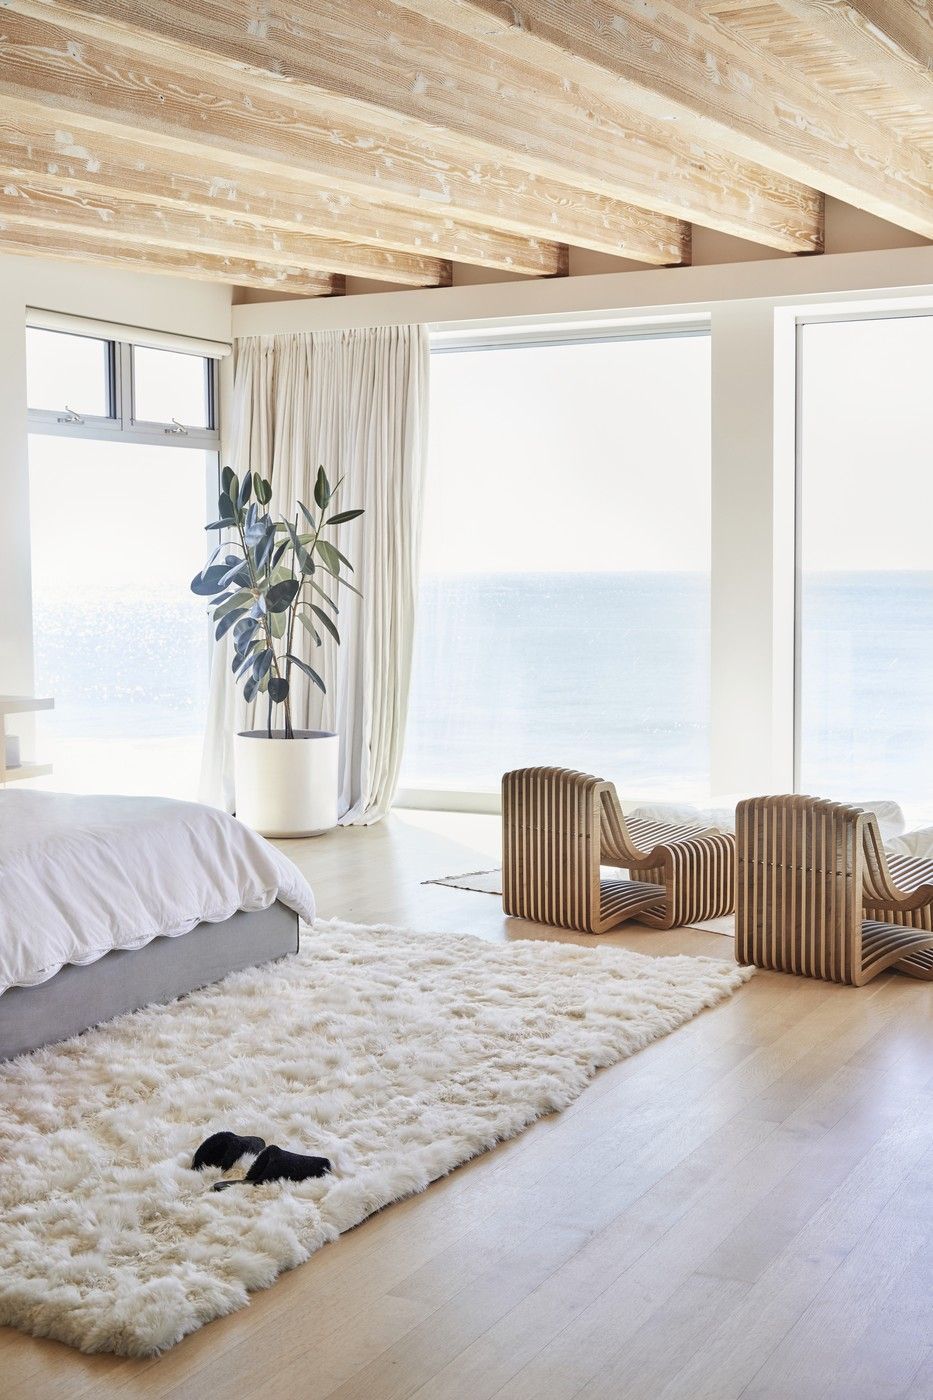 13 gợi ý thiết kế tường kính cho phòng ngủ để hưởng trọn tầm nhìn tuyệt đẹp bên ngoài - Ảnh 10.